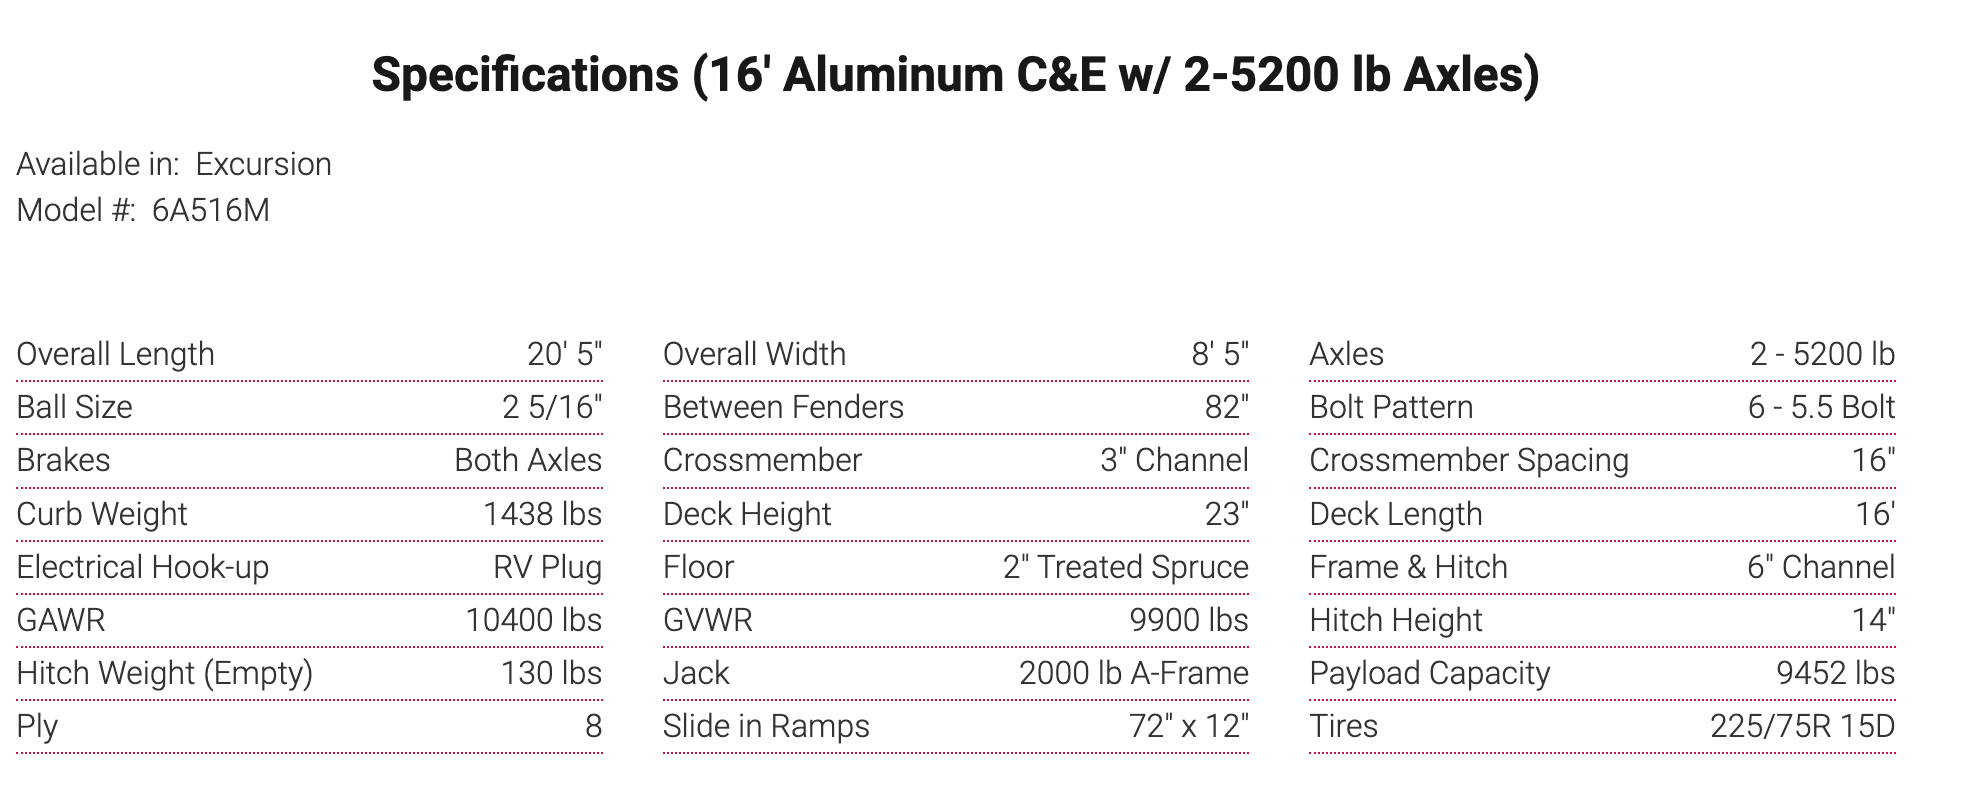 Specifications (16' Aluminum C&E w/ 2-5200 lb Axles)